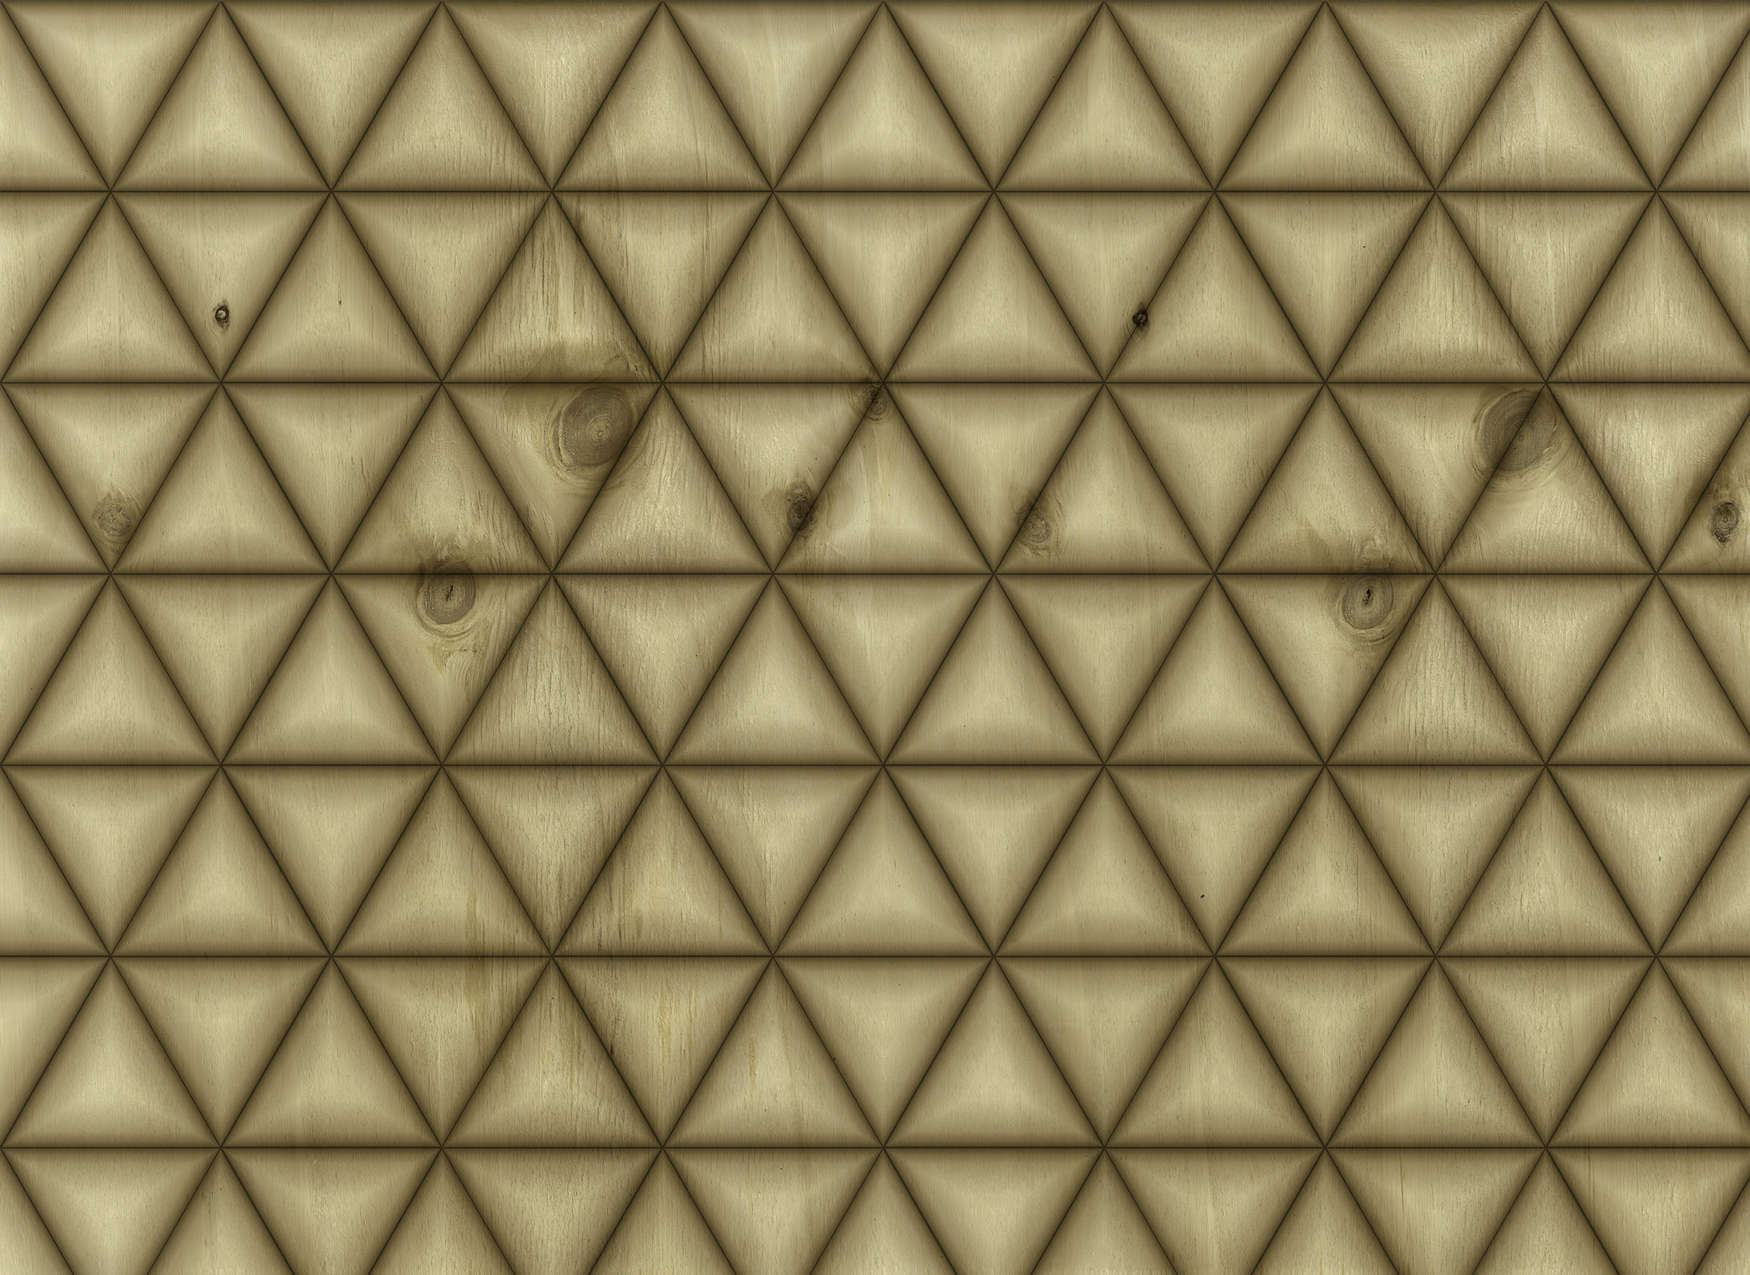             Fotomurali con motivo geometrico a triangoli in legno - Marrone, Beige
        